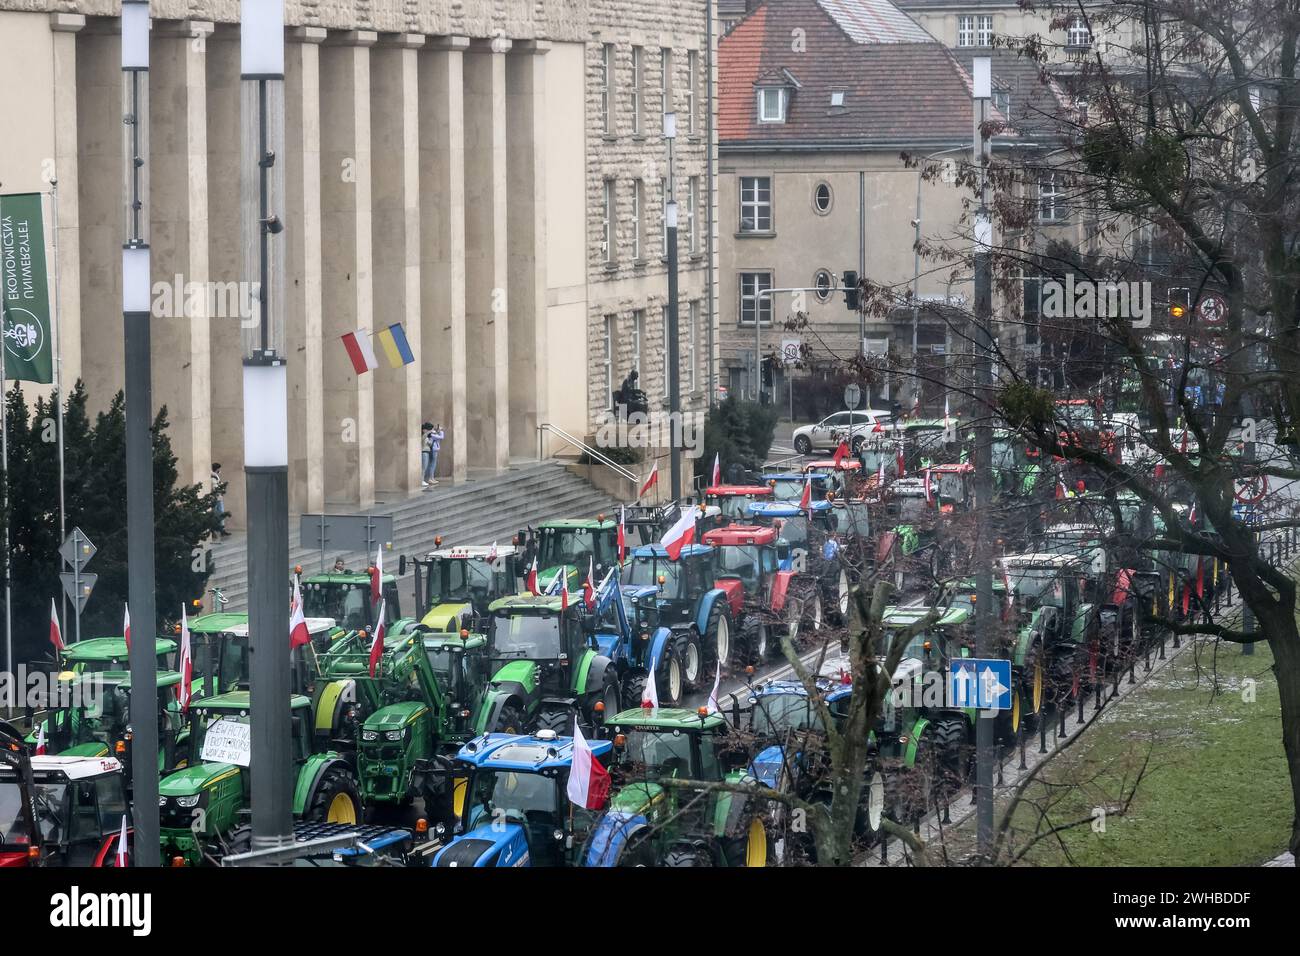 Poznan, Pologne, 9 février 2024. Les agriculteurs de la région de la Grande Pologne, dans l'ouest de la Pologne, conduisent leurs tracteurs alors qu'ils bloquent la route Aleja Niepodleglosci dans le centre de Poznań, la capitale de la Grande Pologne, pendant la grève nationale des agriculteurs. La manifestation en Pologne s'inscrit dans le cadre de la protestation des agriculteurs européens contre les règlements du Green Deal de l'UE. Les agriculteurs polonais demandent également une modification de l'accord de l'UE avec l'Ukraine concernant l'importation de produits agricoles dans l'UE. La manifestation à Poznań, la capitale de la Grande Pologne, a été organisée par Rola Wielkopolska et a rassemblé plus de mille trac Banque D'Images